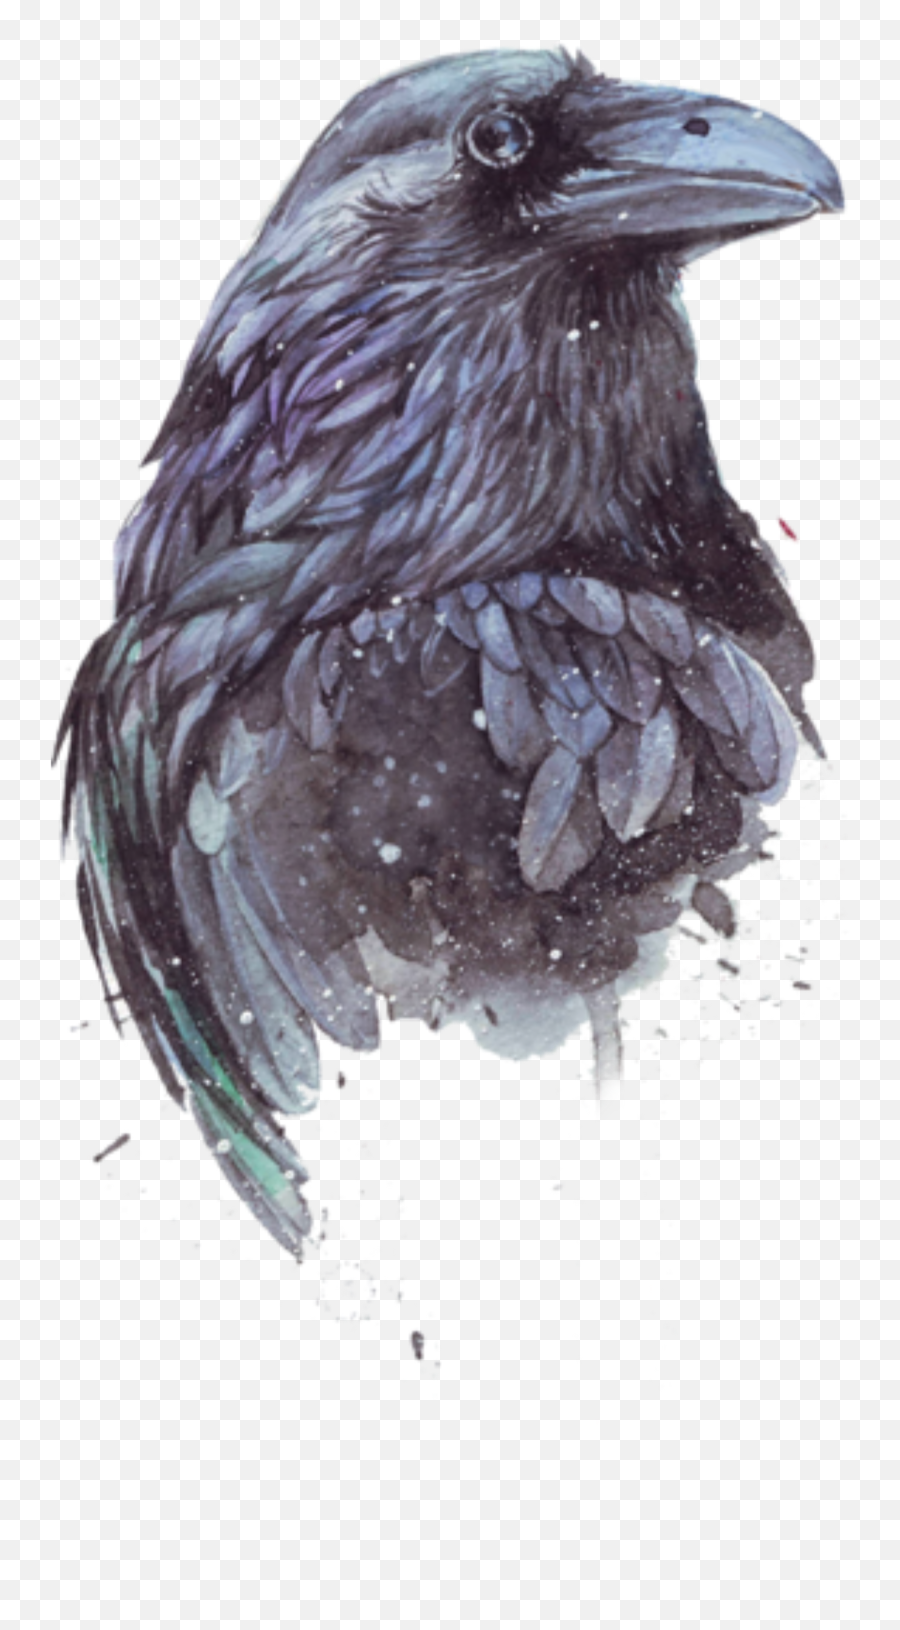 Bird Raven Crow Magpie Freetoedit - Raven Paintings In Watercolor Emoji,Crow Emoji